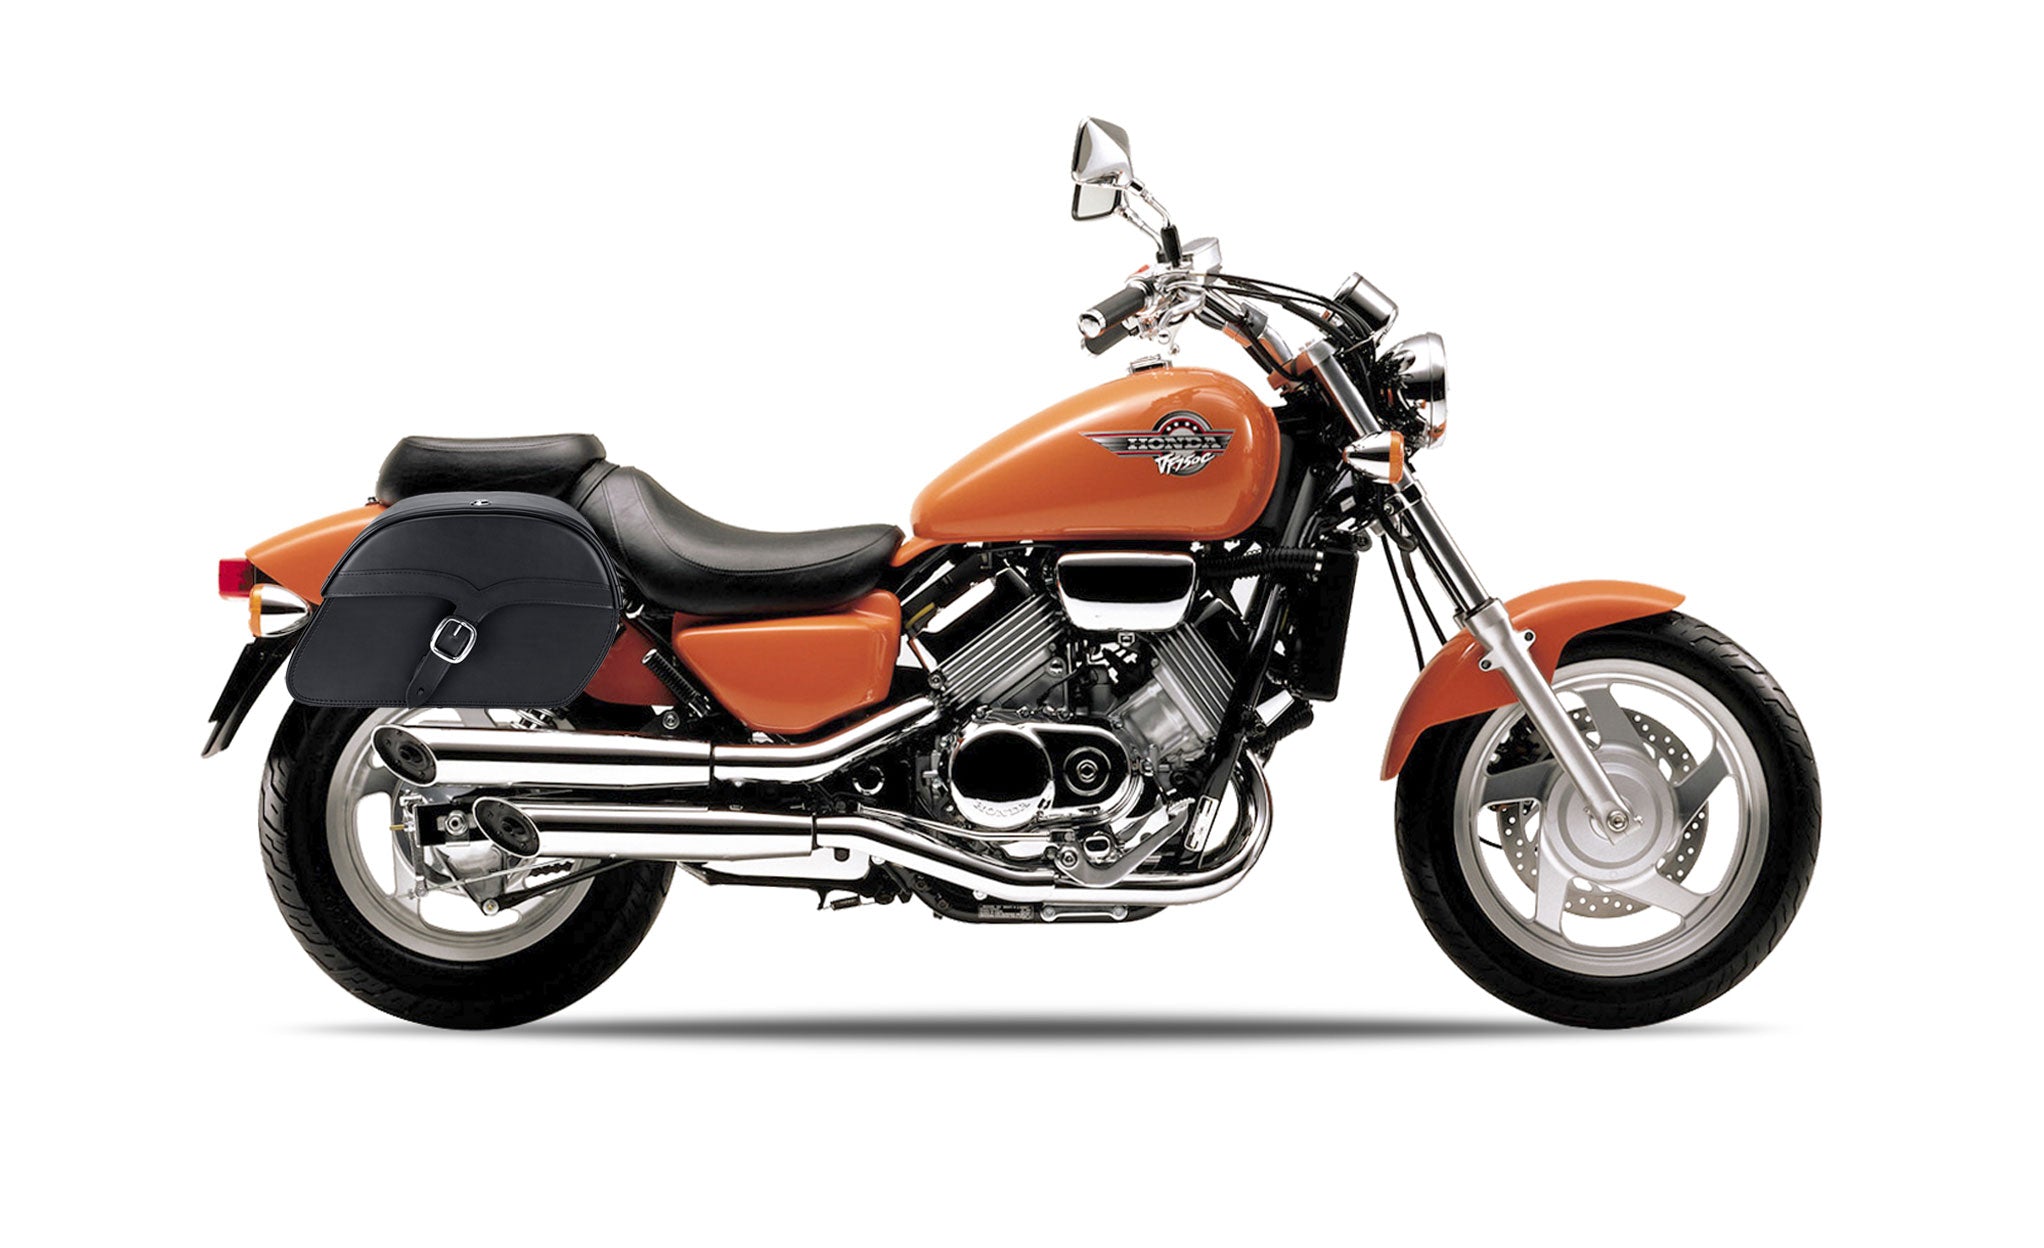 Viking Vintage Medium Honda Magna 750 Vf750C Leather Motorcycle Saddlebags on Bike Photo @expand